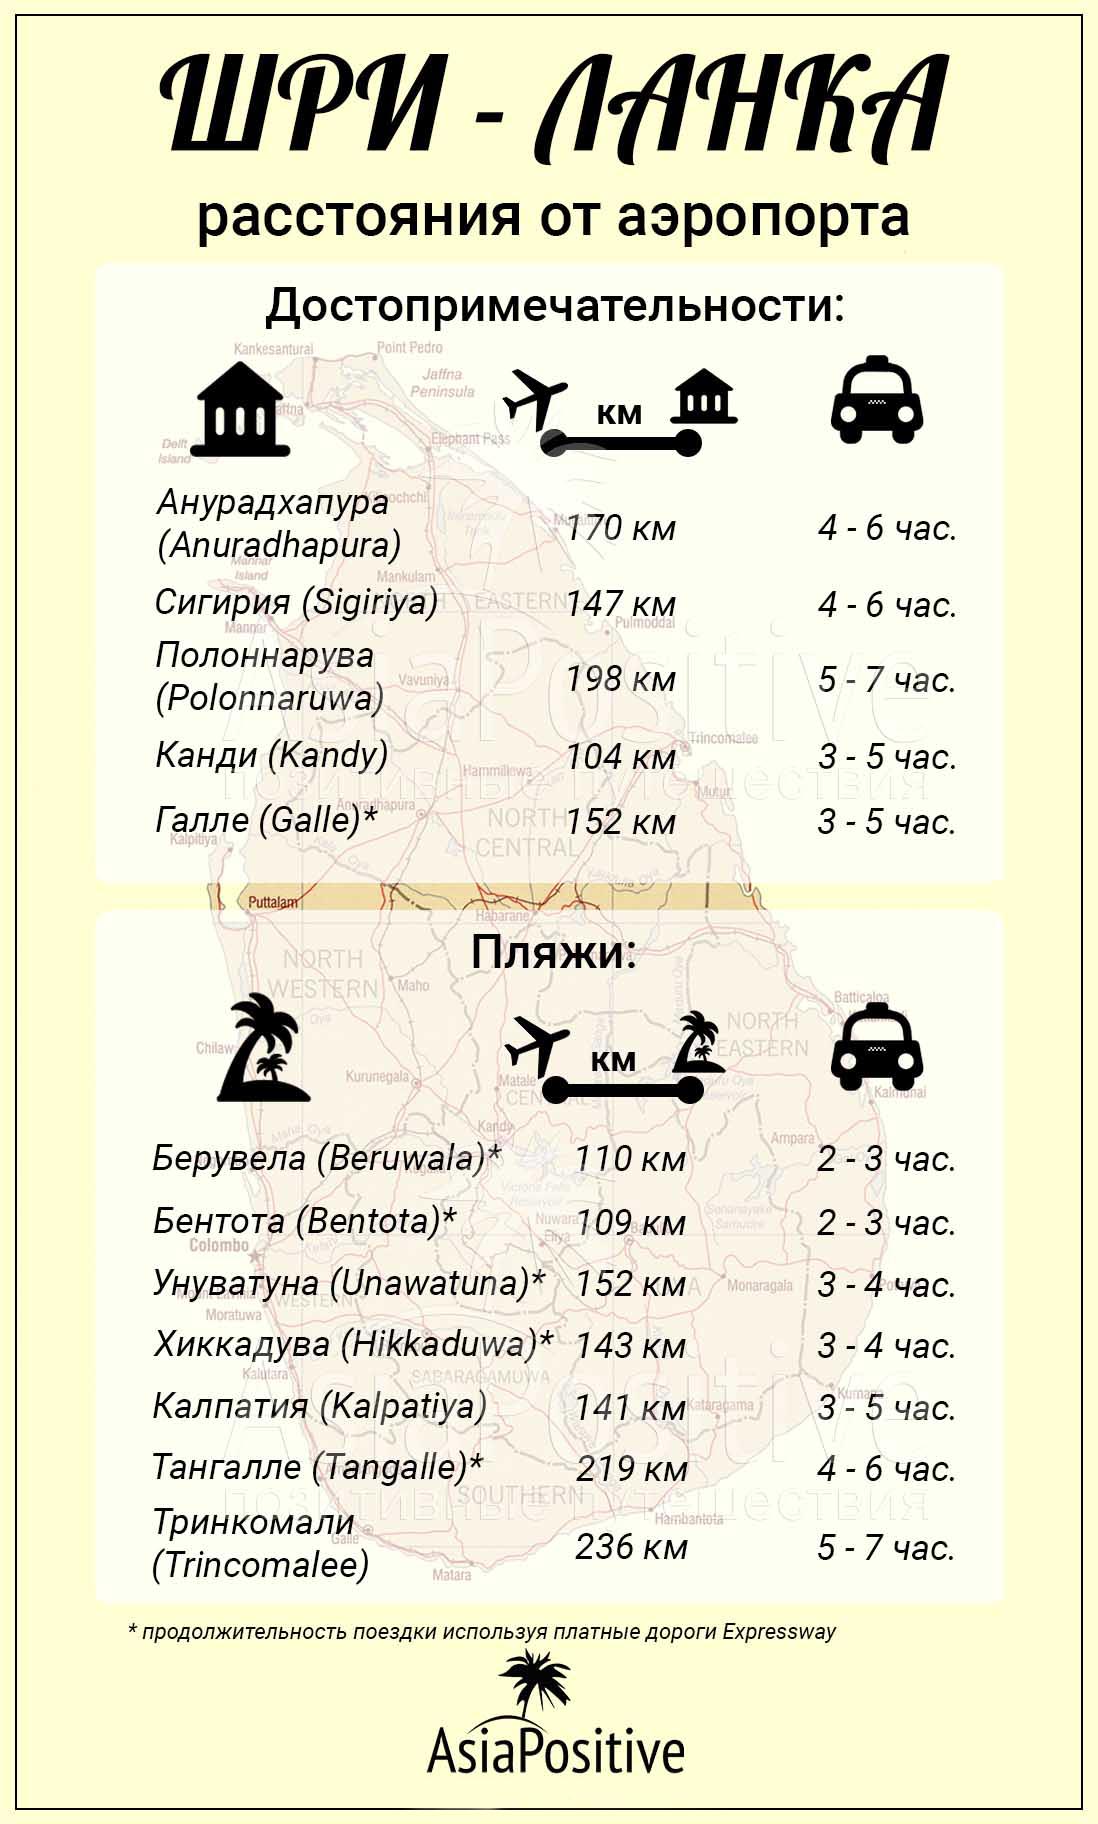 Инфографика расстояния от аэропорта Коломбо до достопримечательностей и пляжей Шри-Ланки 